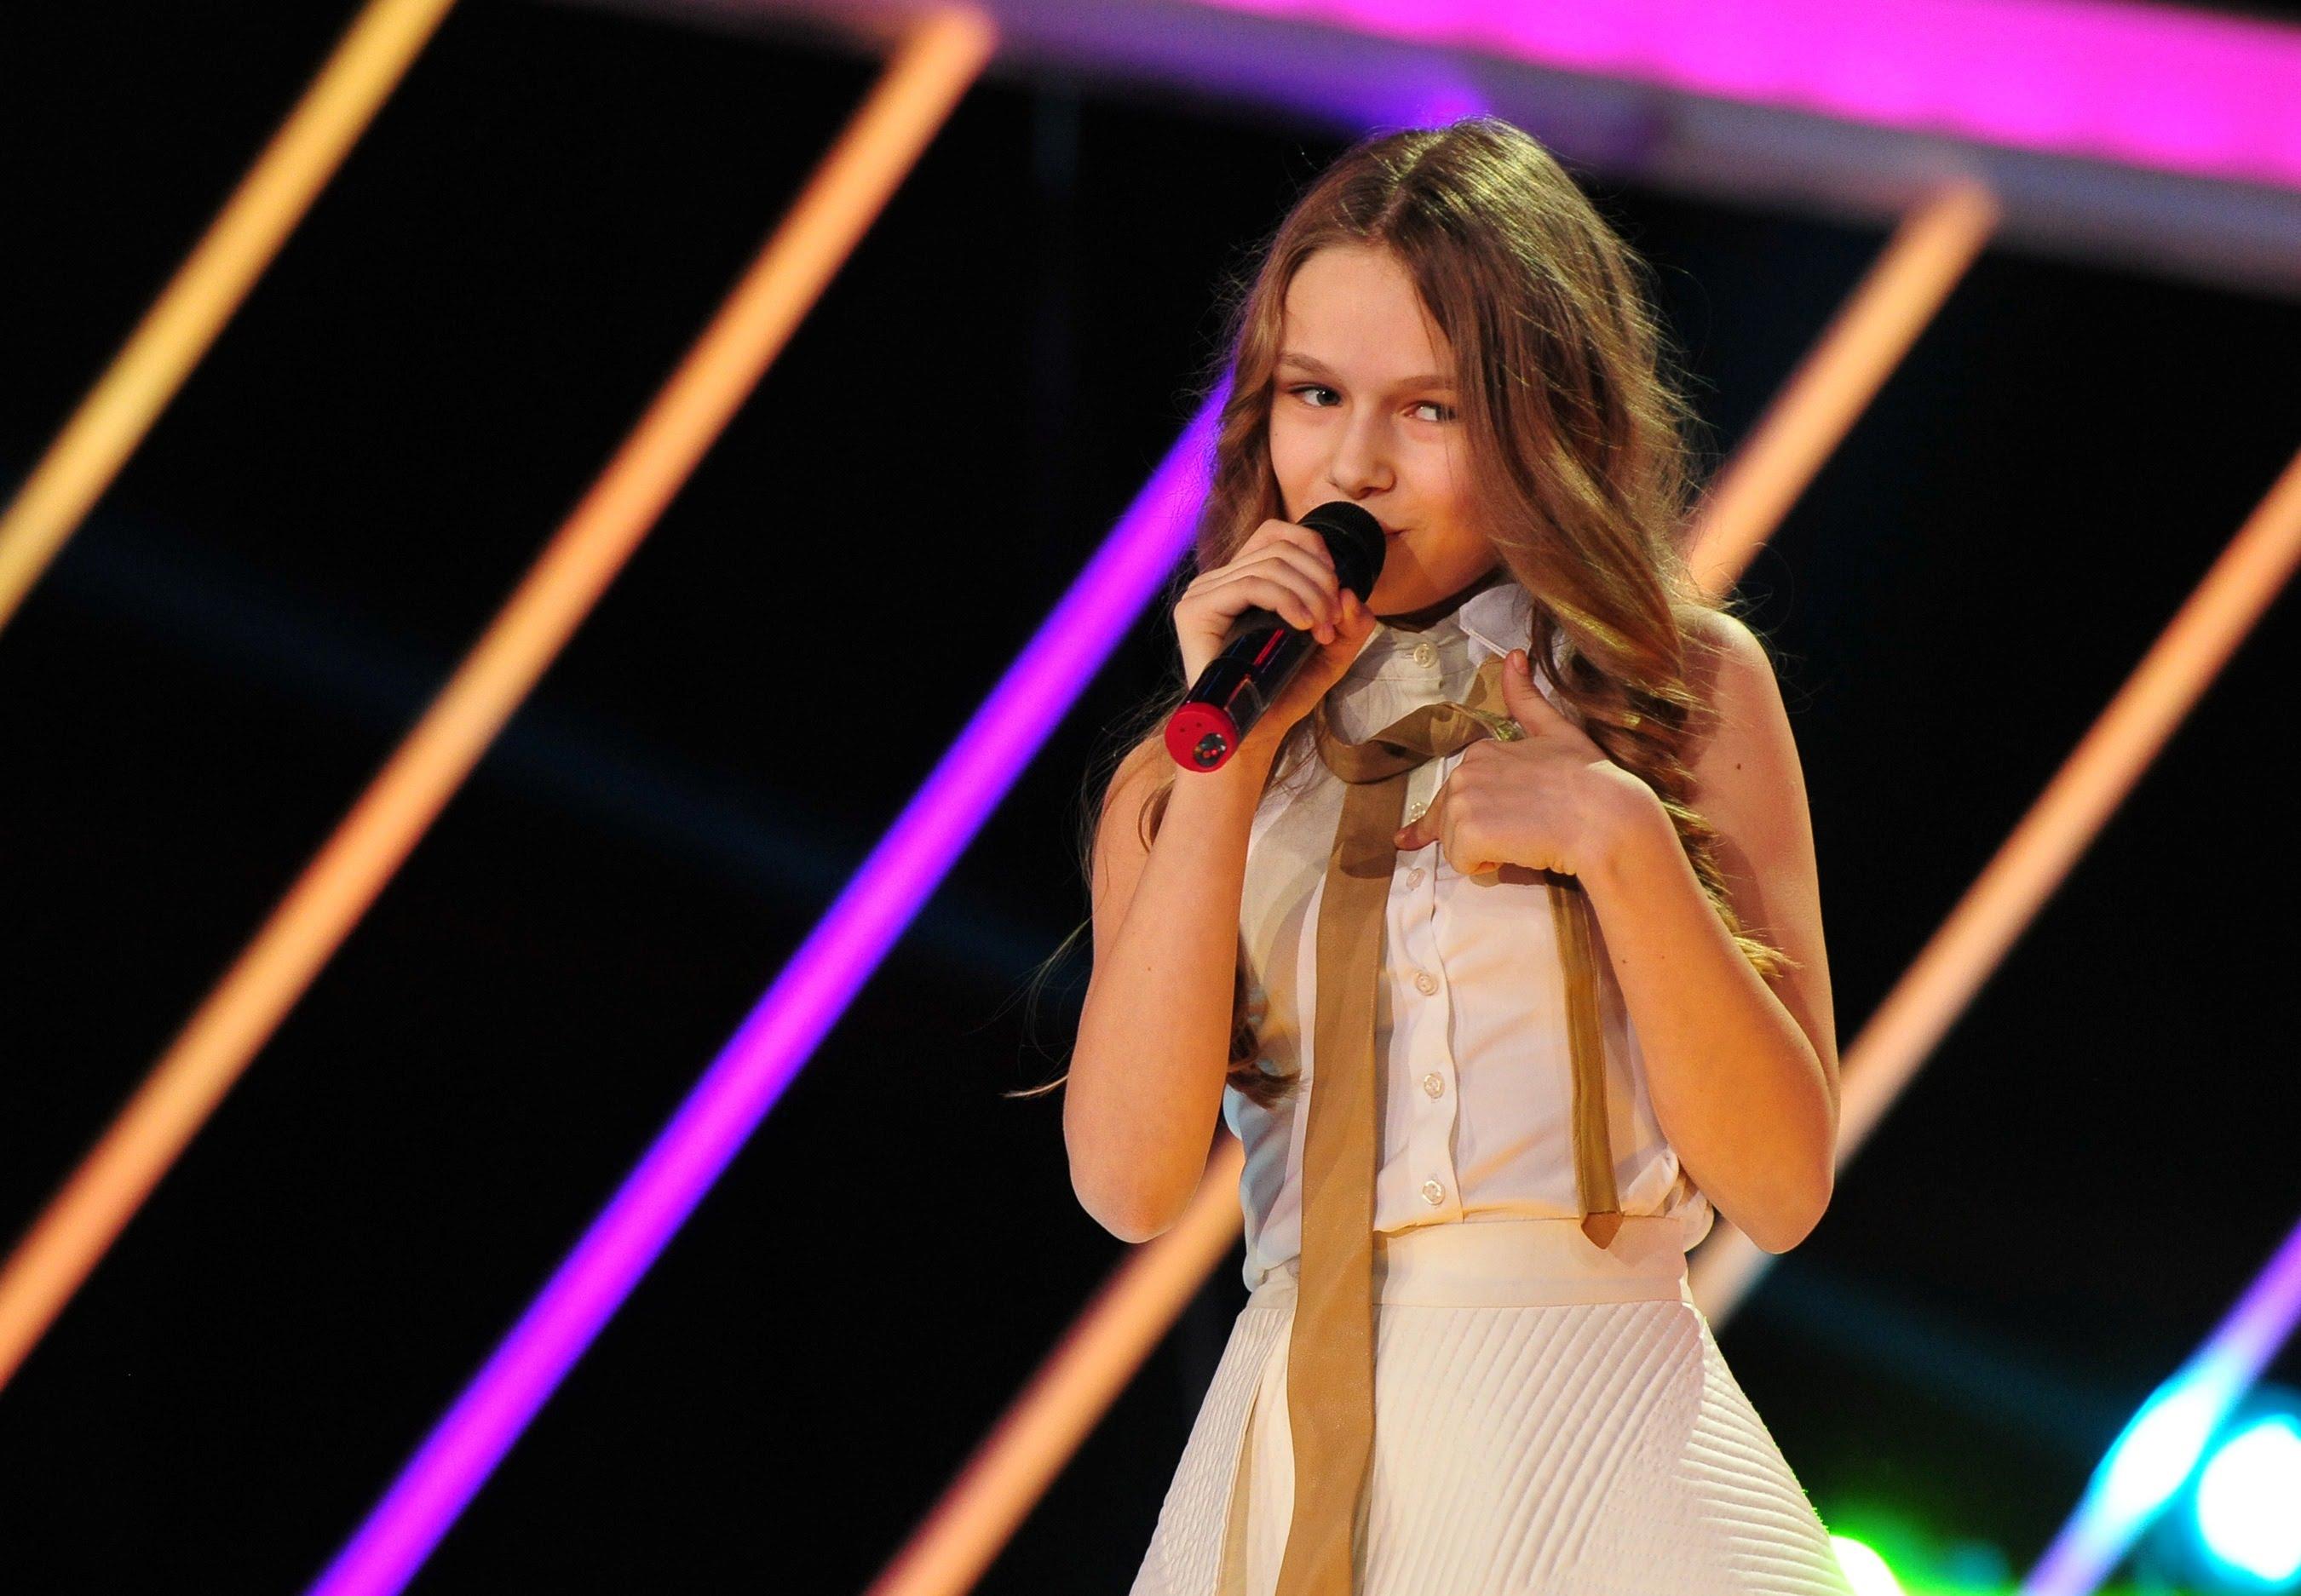 Eva Timuș a cucerit juriul de la Next Star prin talent și frumusețe: ”Aduce cu Taylor Swift!”